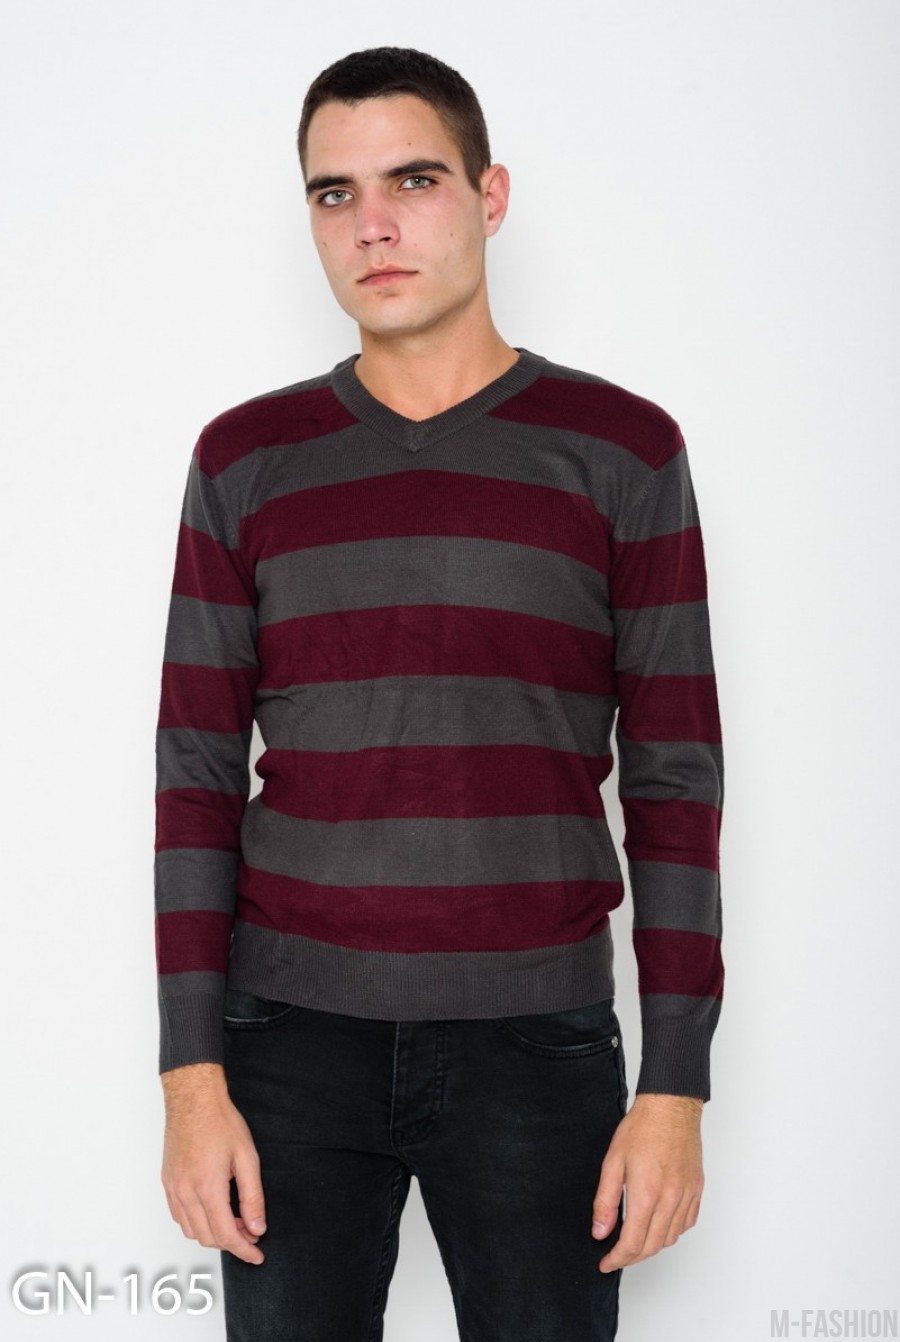 Ангоровый бордовый полосатый комфортный свитер с V-образной манжеткой на горловине - Фото 1